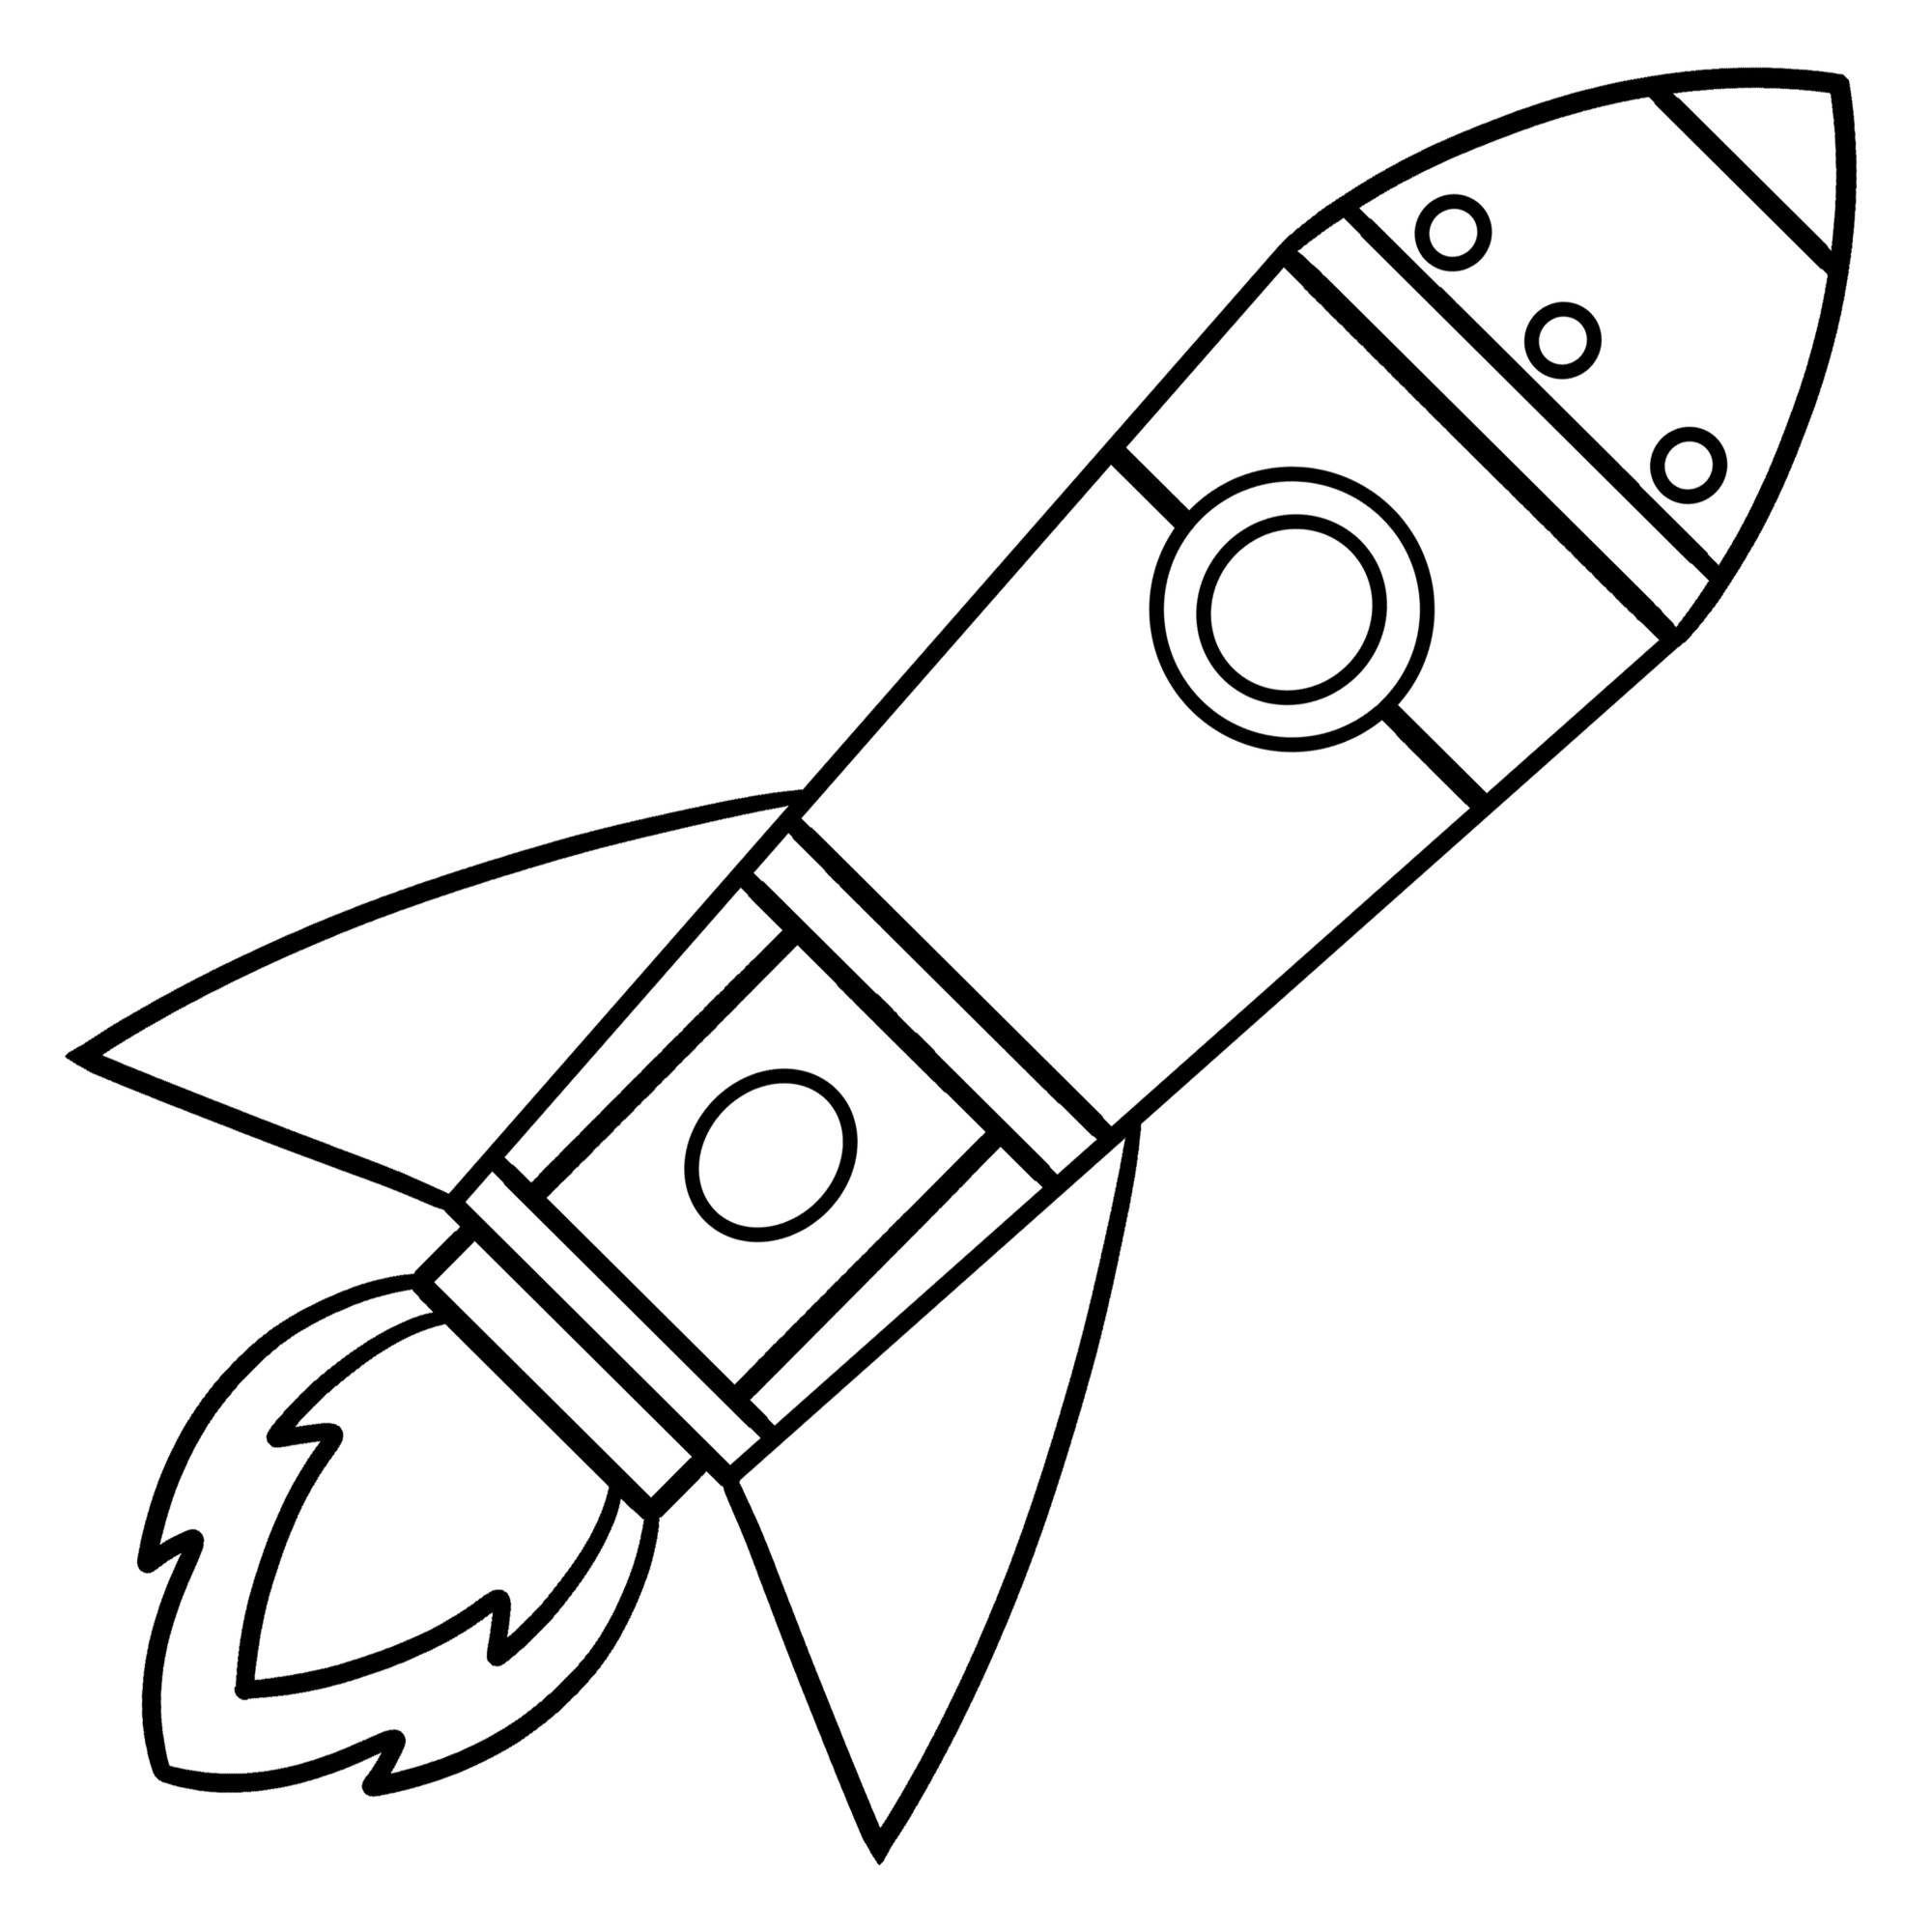 Раскраска для детей: игрушка космический корабль ракета